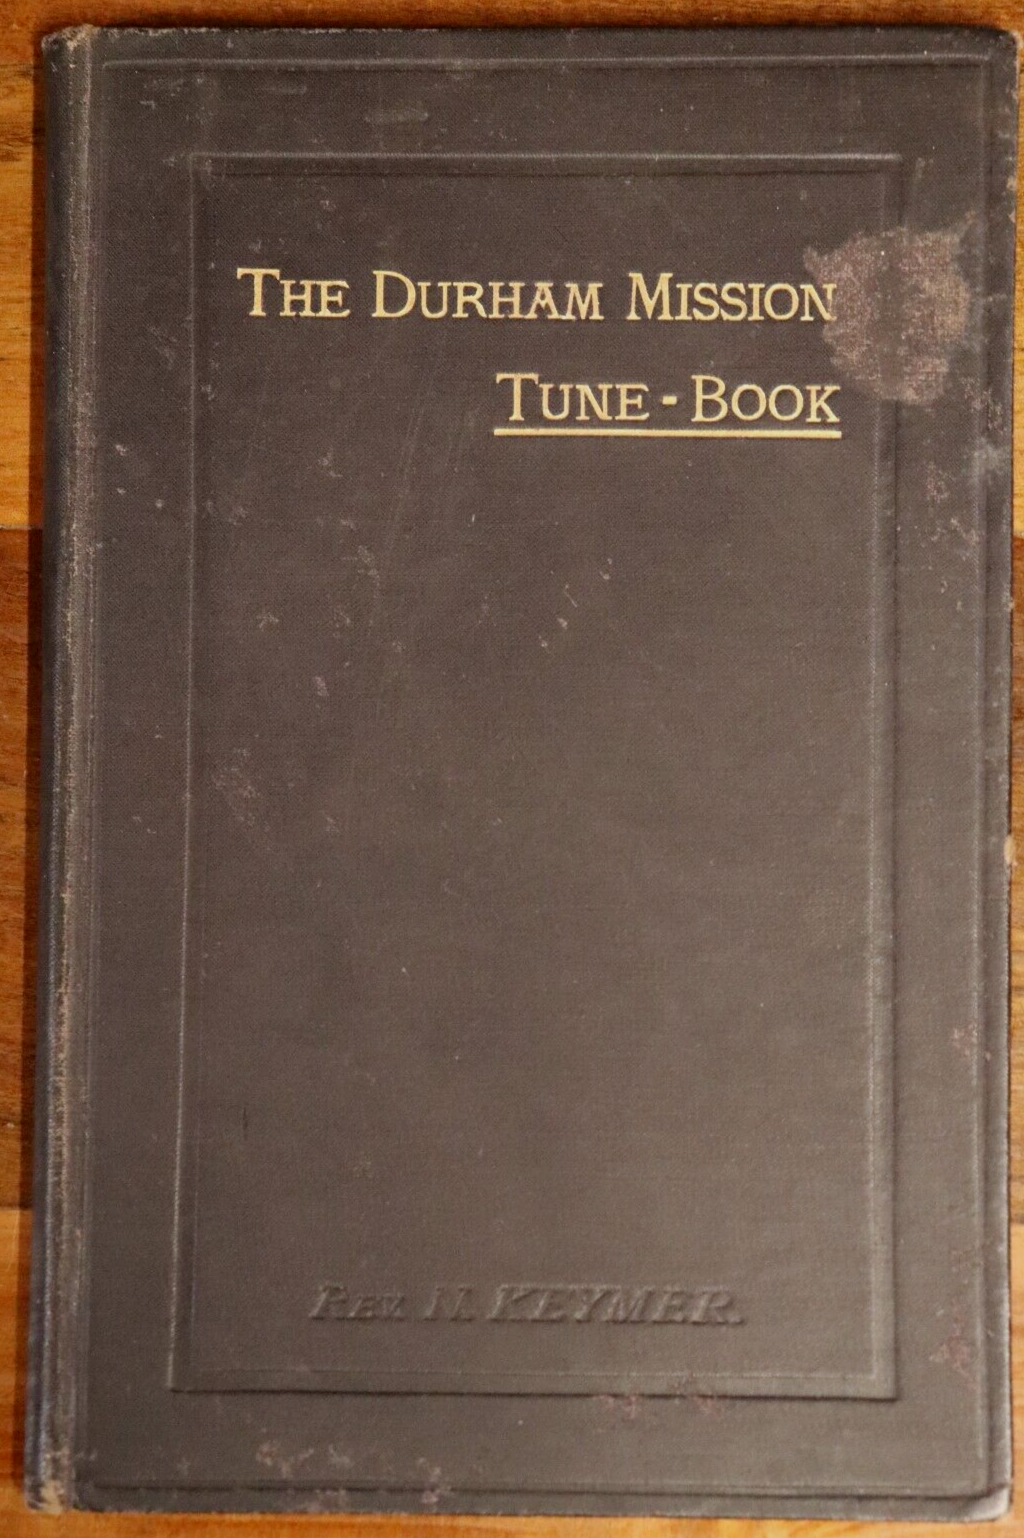 The Durham Mission Tune Book - c1888 - Antique Religious Music Book